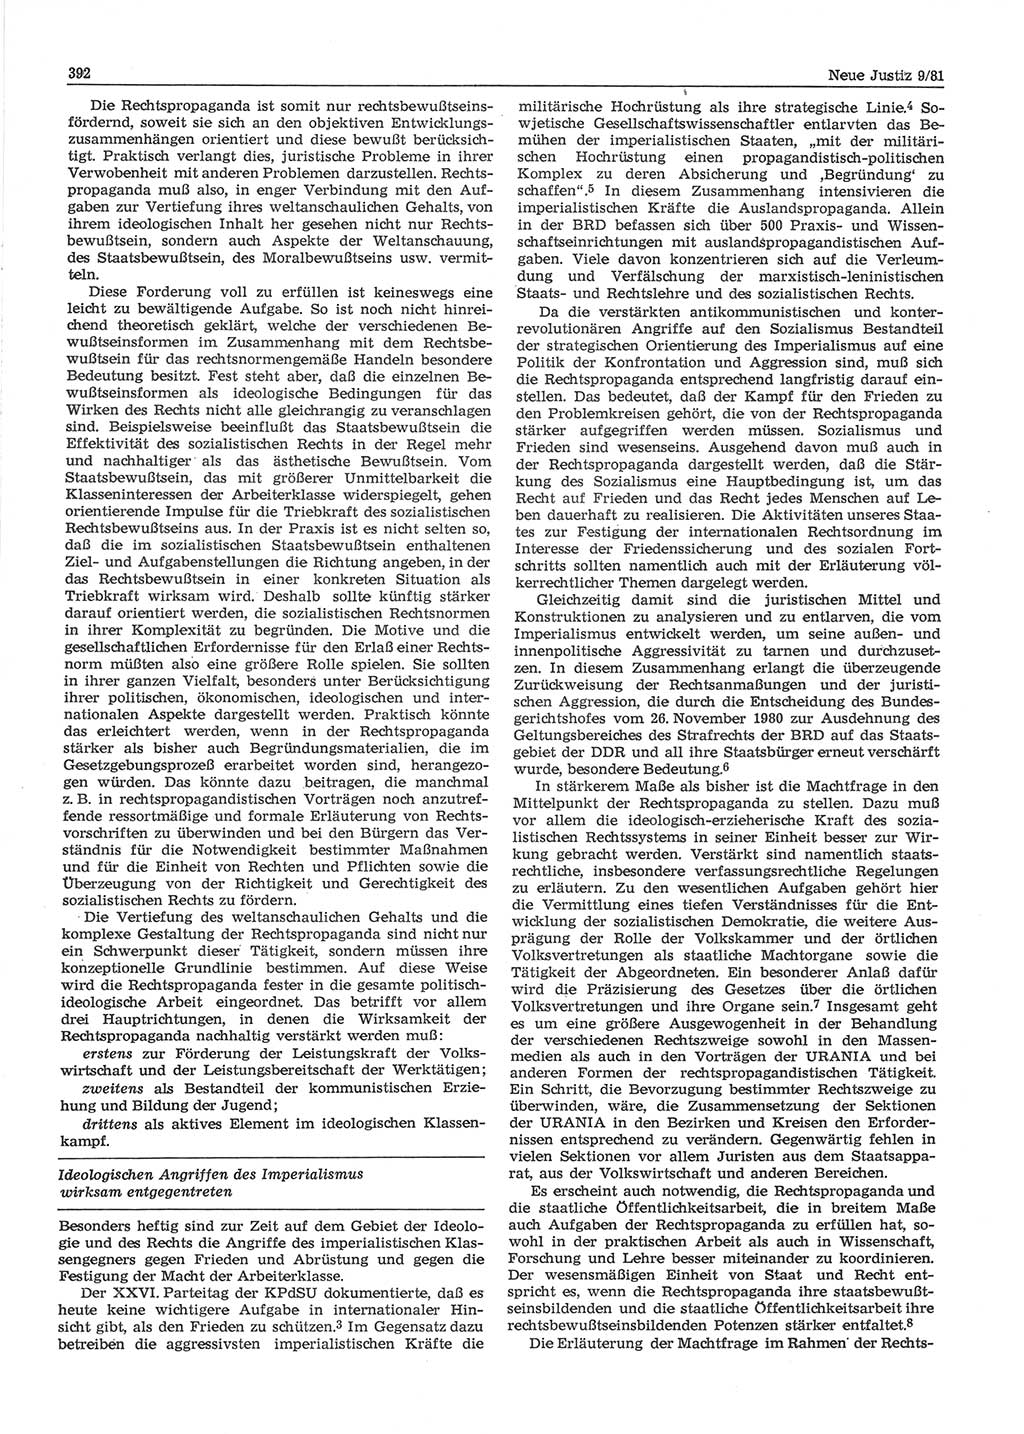 Neue Justiz (NJ), Zeitschrift für sozialistisches Recht und Gesetzlichkeit [Deutsche Demokratische Republik (DDR)], 35. Jahrgang 1981, Seite 392 (NJ DDR 1981, S. 392)